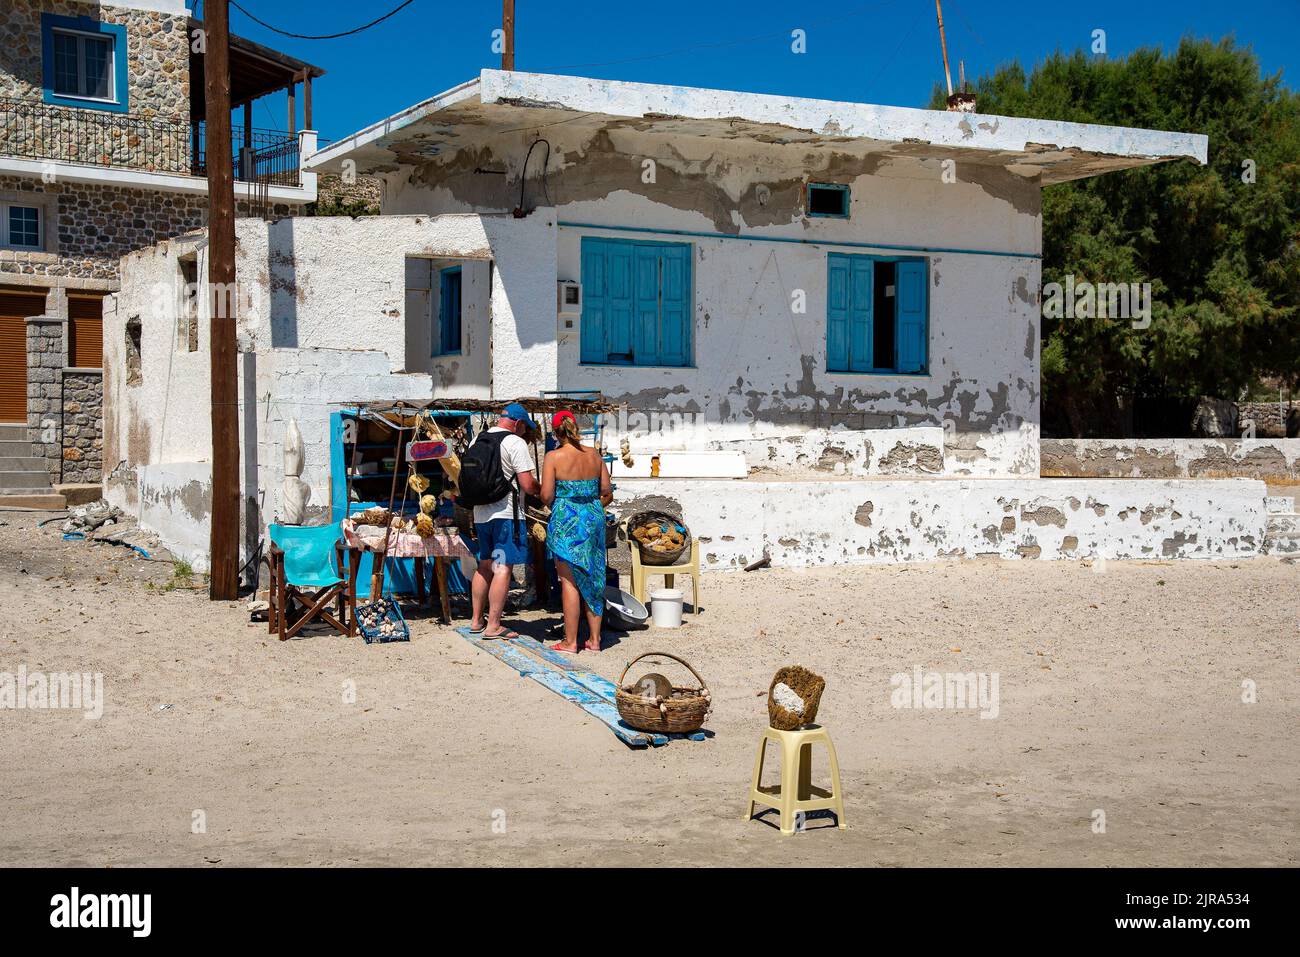 Un stand vendant des éponges sur la plage à Pserimos, Kalymnos, Dodécanèse, sud de la mer Égée, Grèce. Banque D'Images